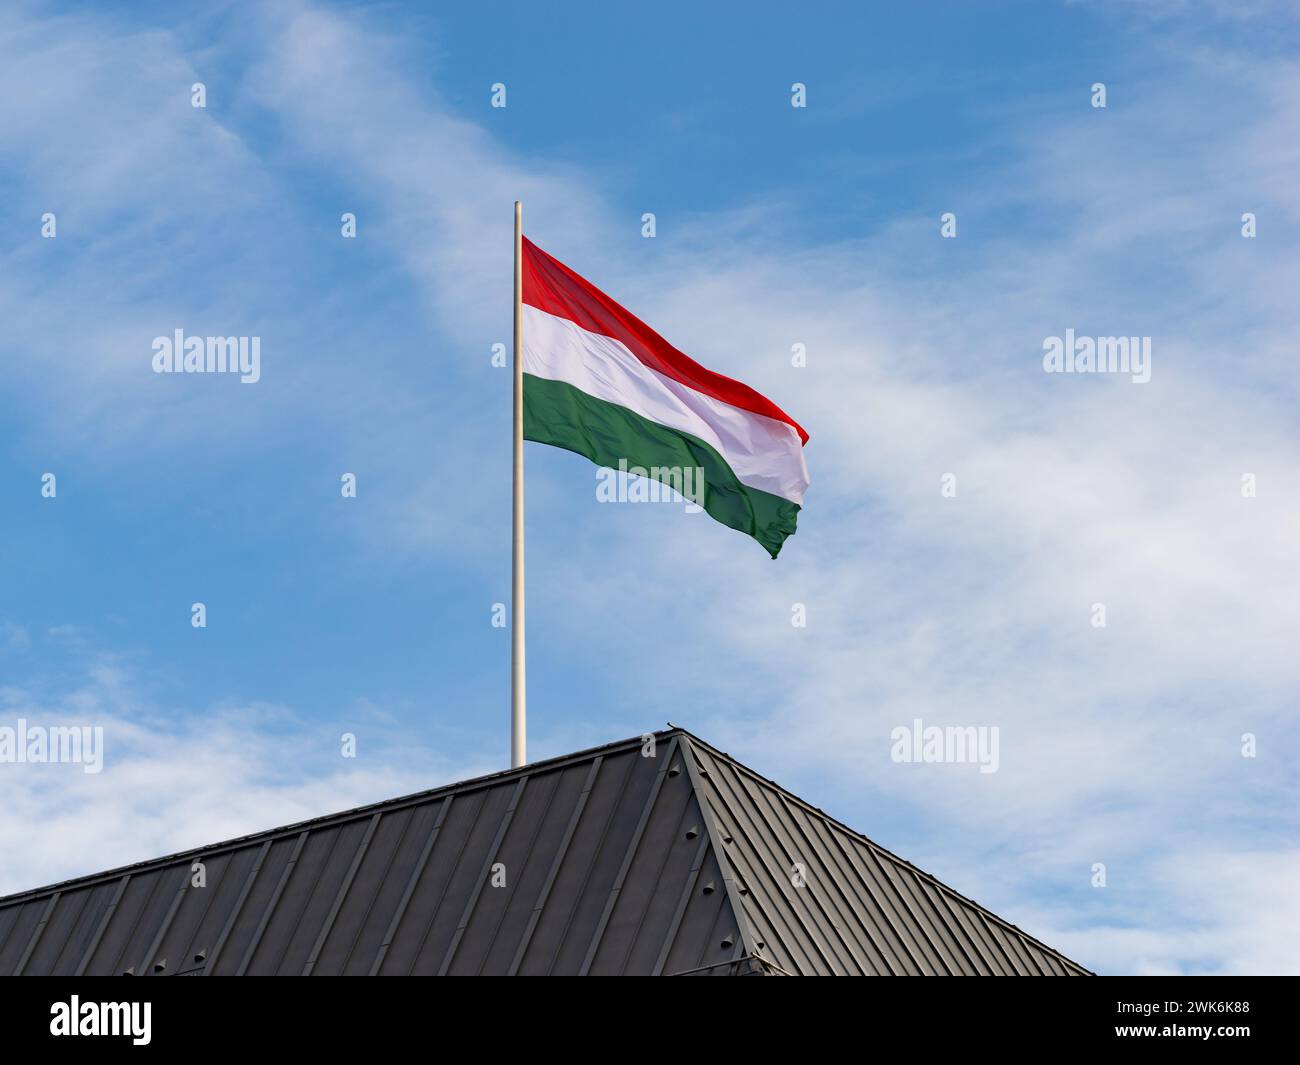 Bandiera ungherese sul tetto di un edificio governativo. Simbolo del paese Ungheria in Europa e firma per un partenariato internazionale. Foto Stock